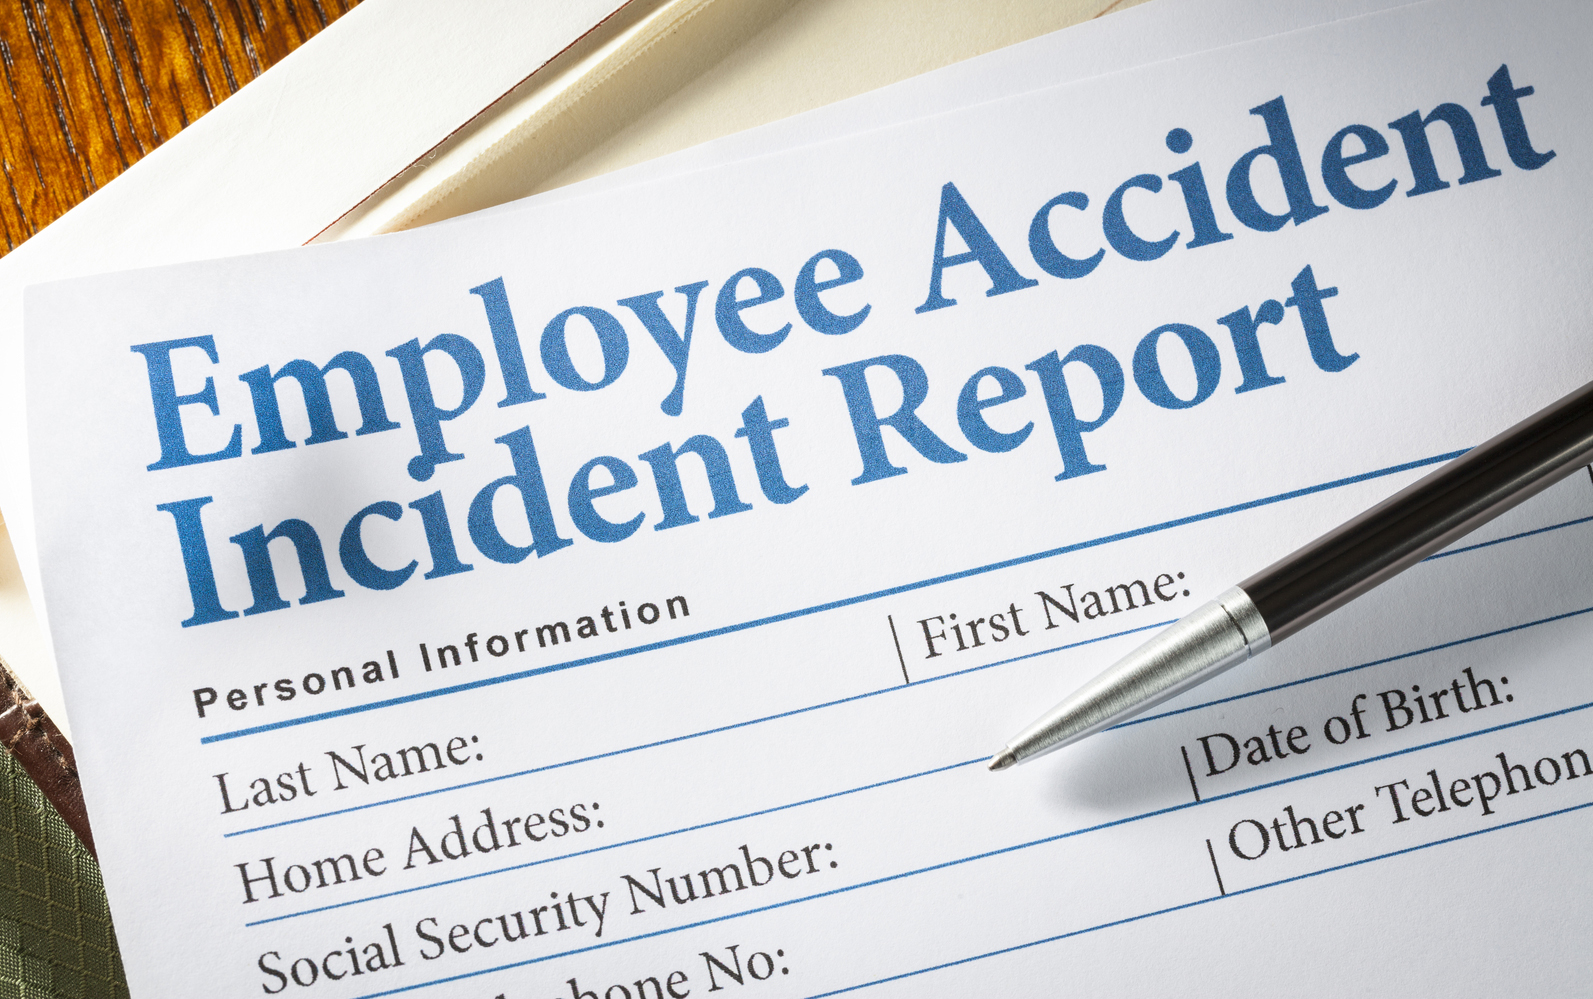 Employee-incident-report